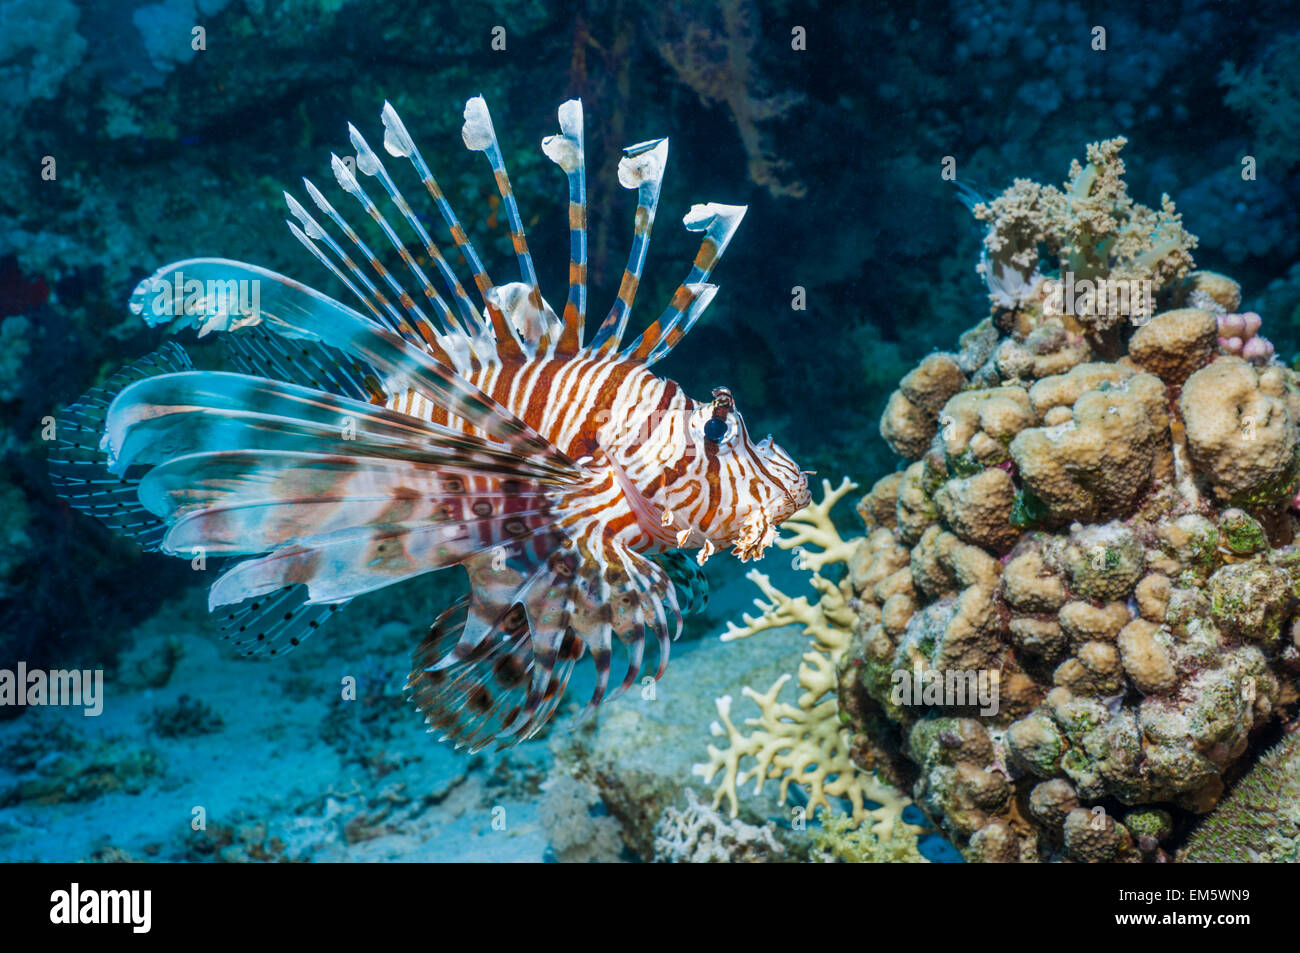 Poisson-papillon commun ou devil firefish (Pterois miles). Souvent confondu avec poisson-papillon rouge (Pterois volitans). Endémique de la Mer Rouge. Banque D'Images